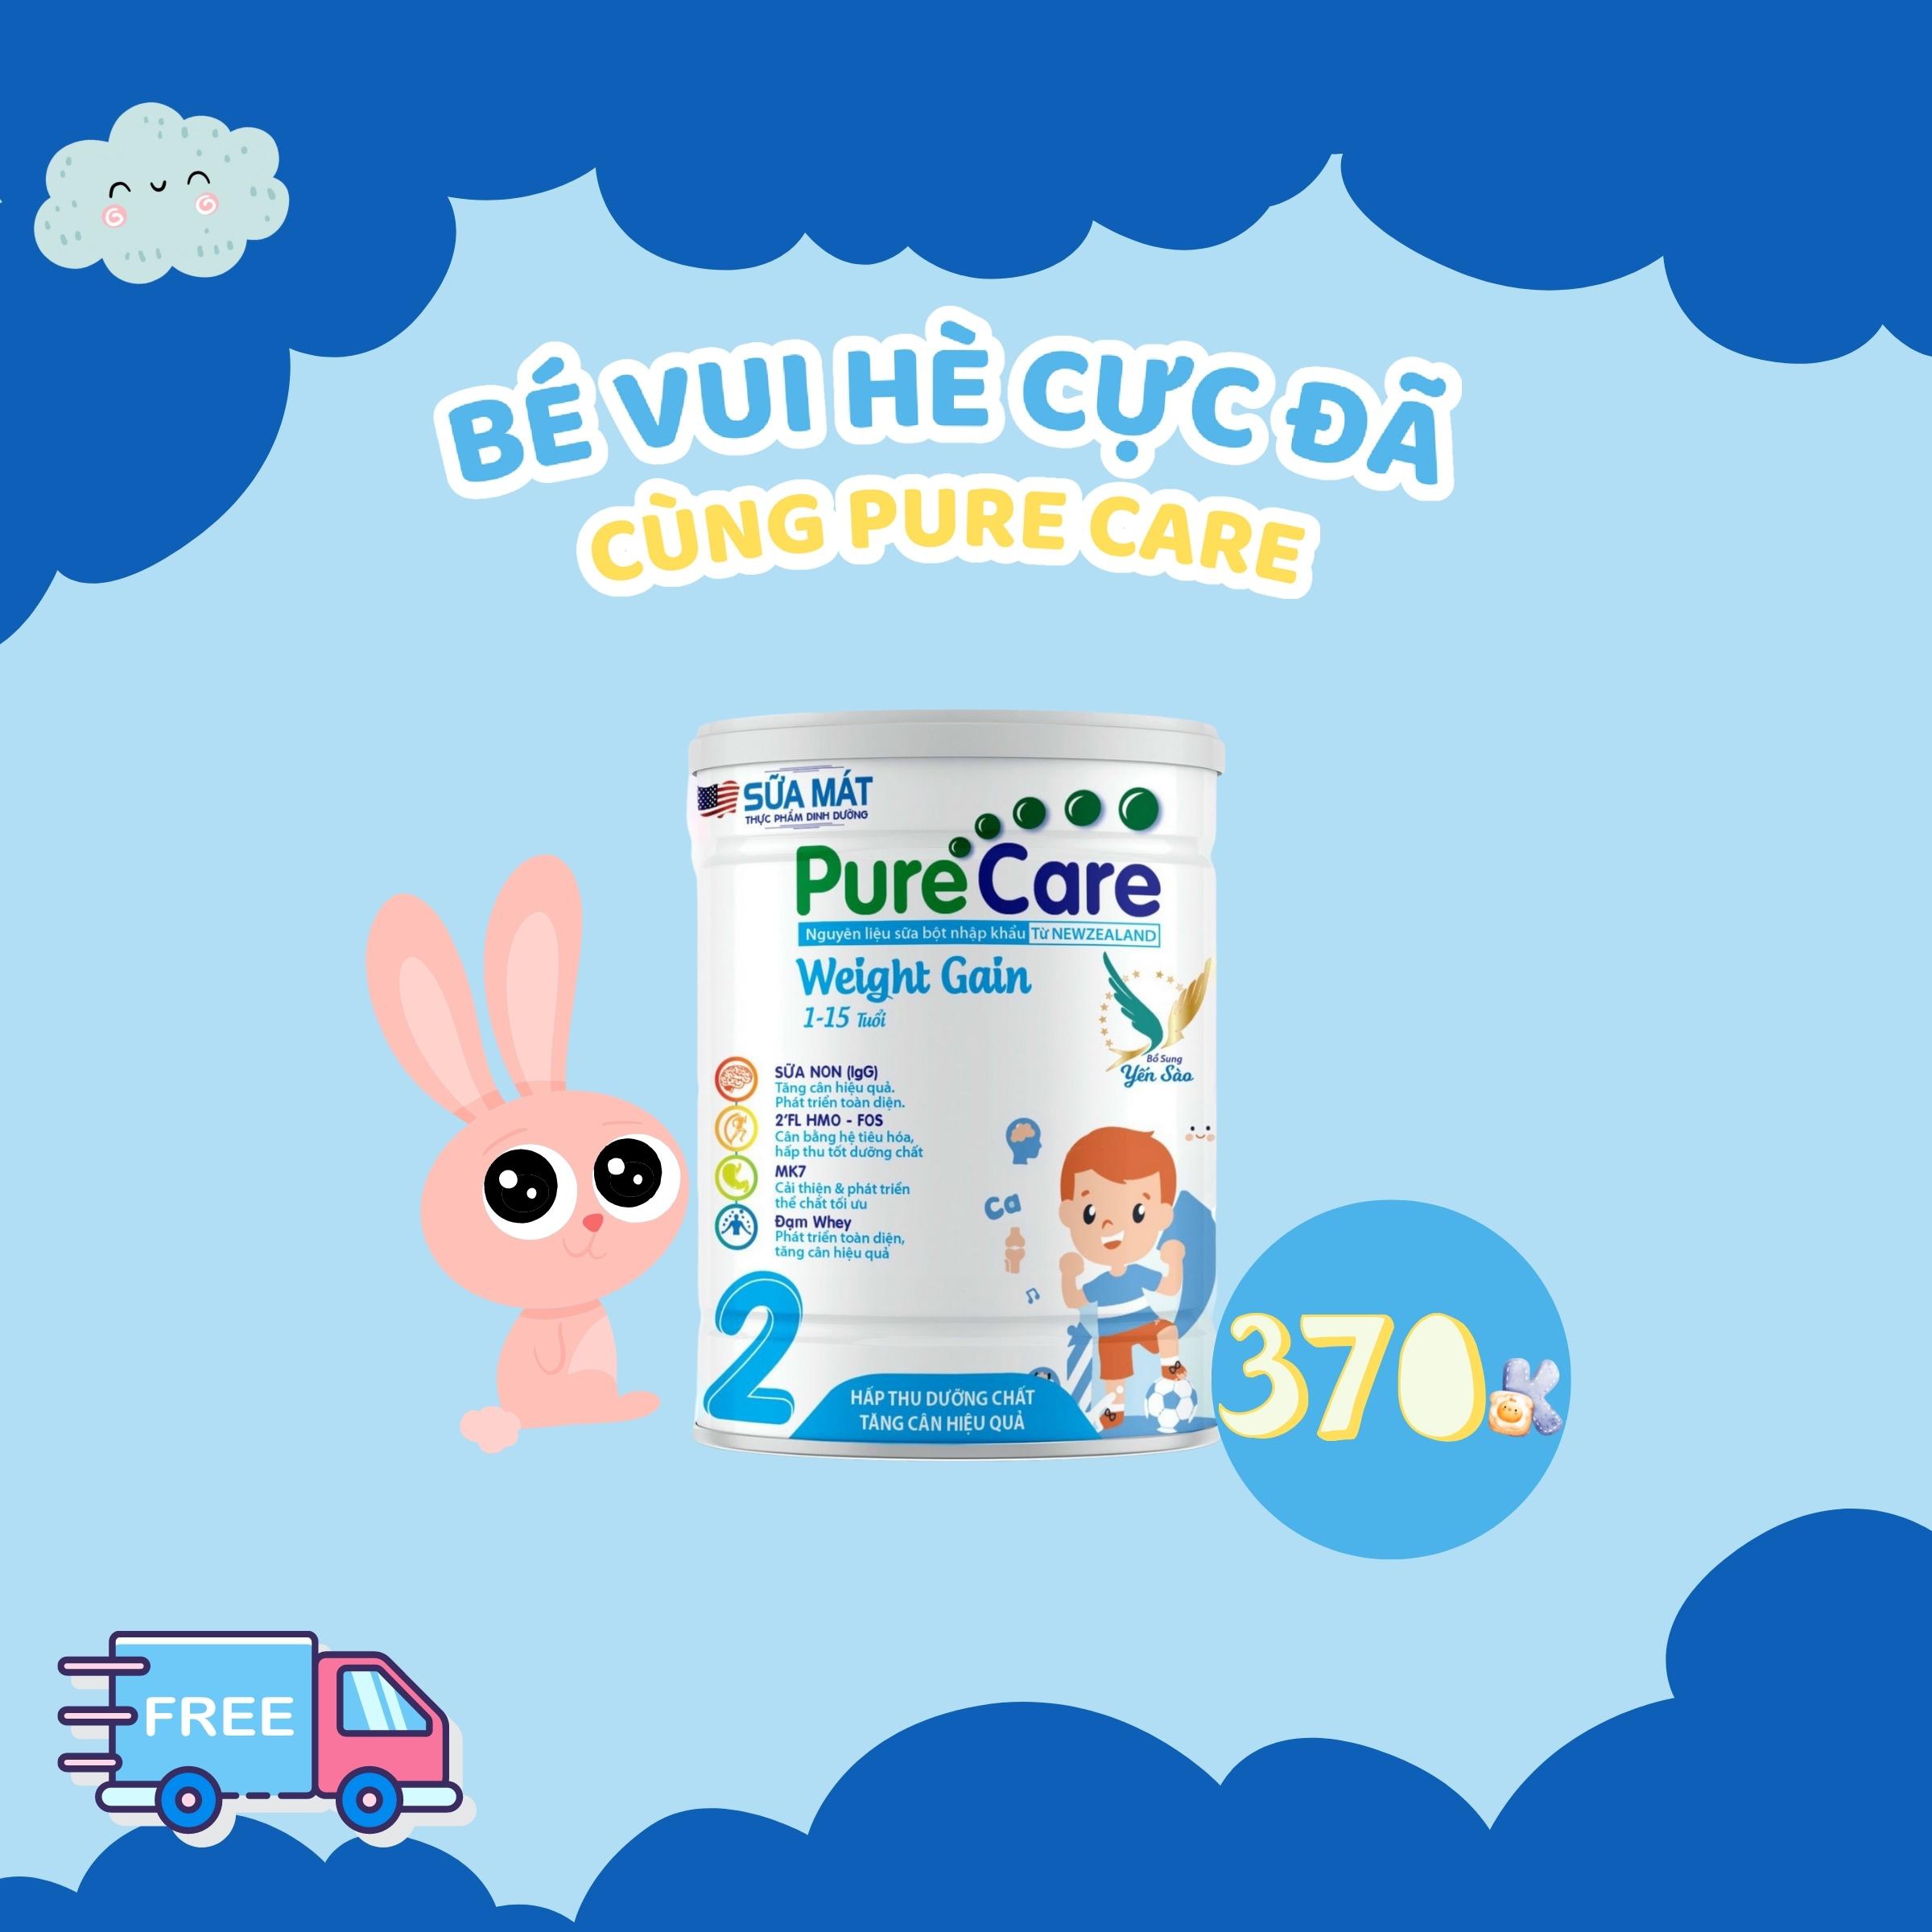 Sữa Pure Care, phân phối sữa mát Pure Care cho bé chất lượng